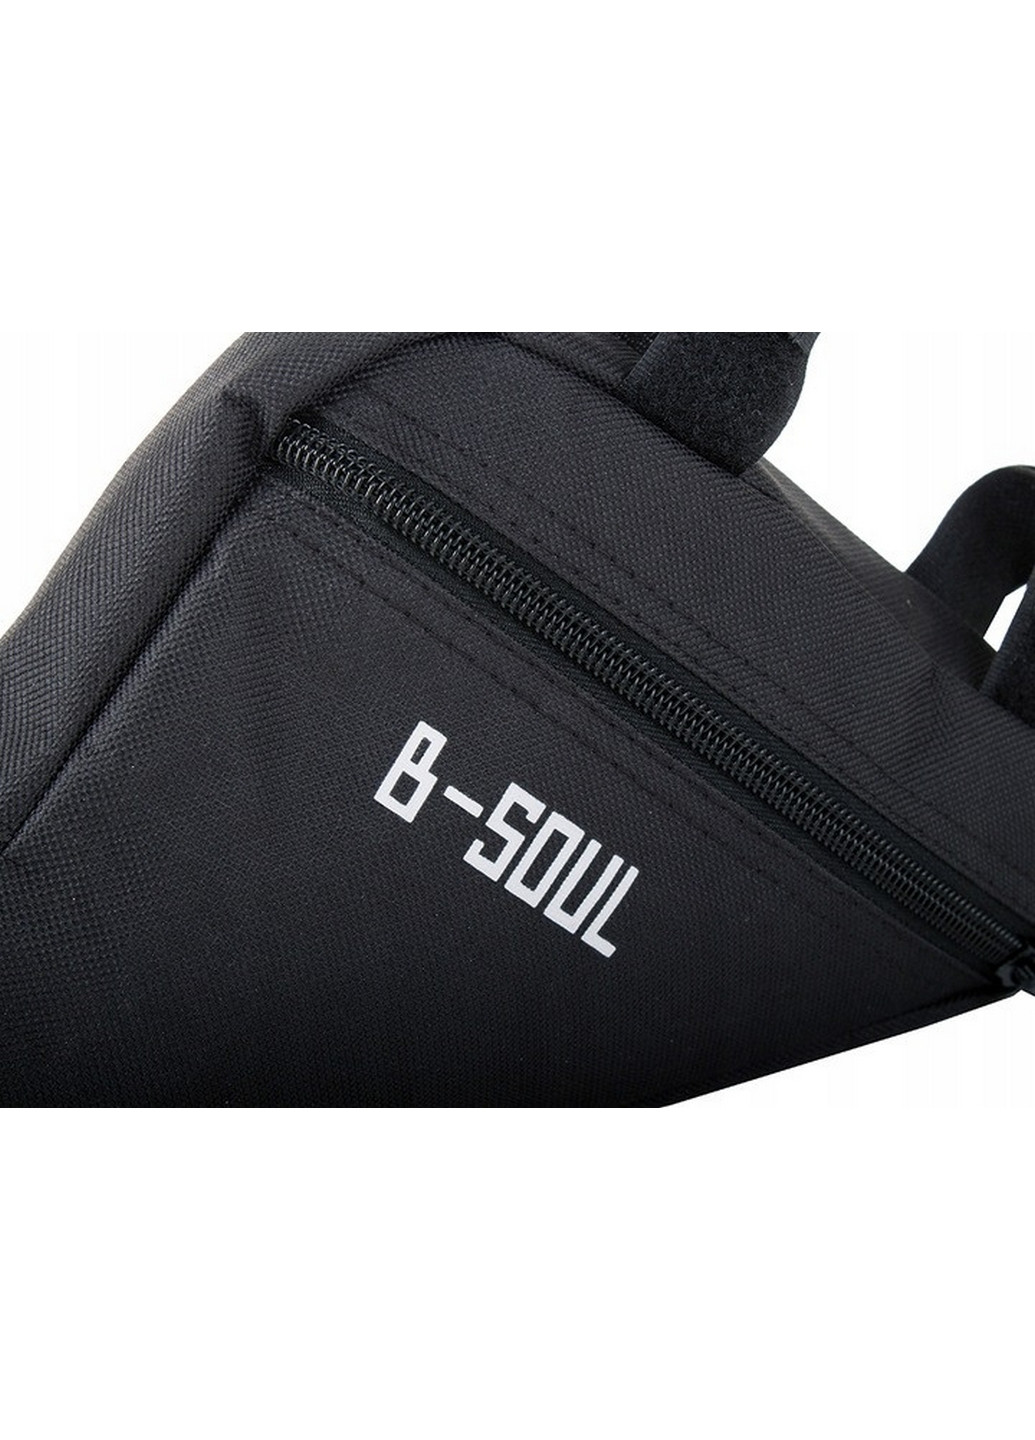 Велосипедна сумка на раму 19x18x4см B-Soul (260514428)